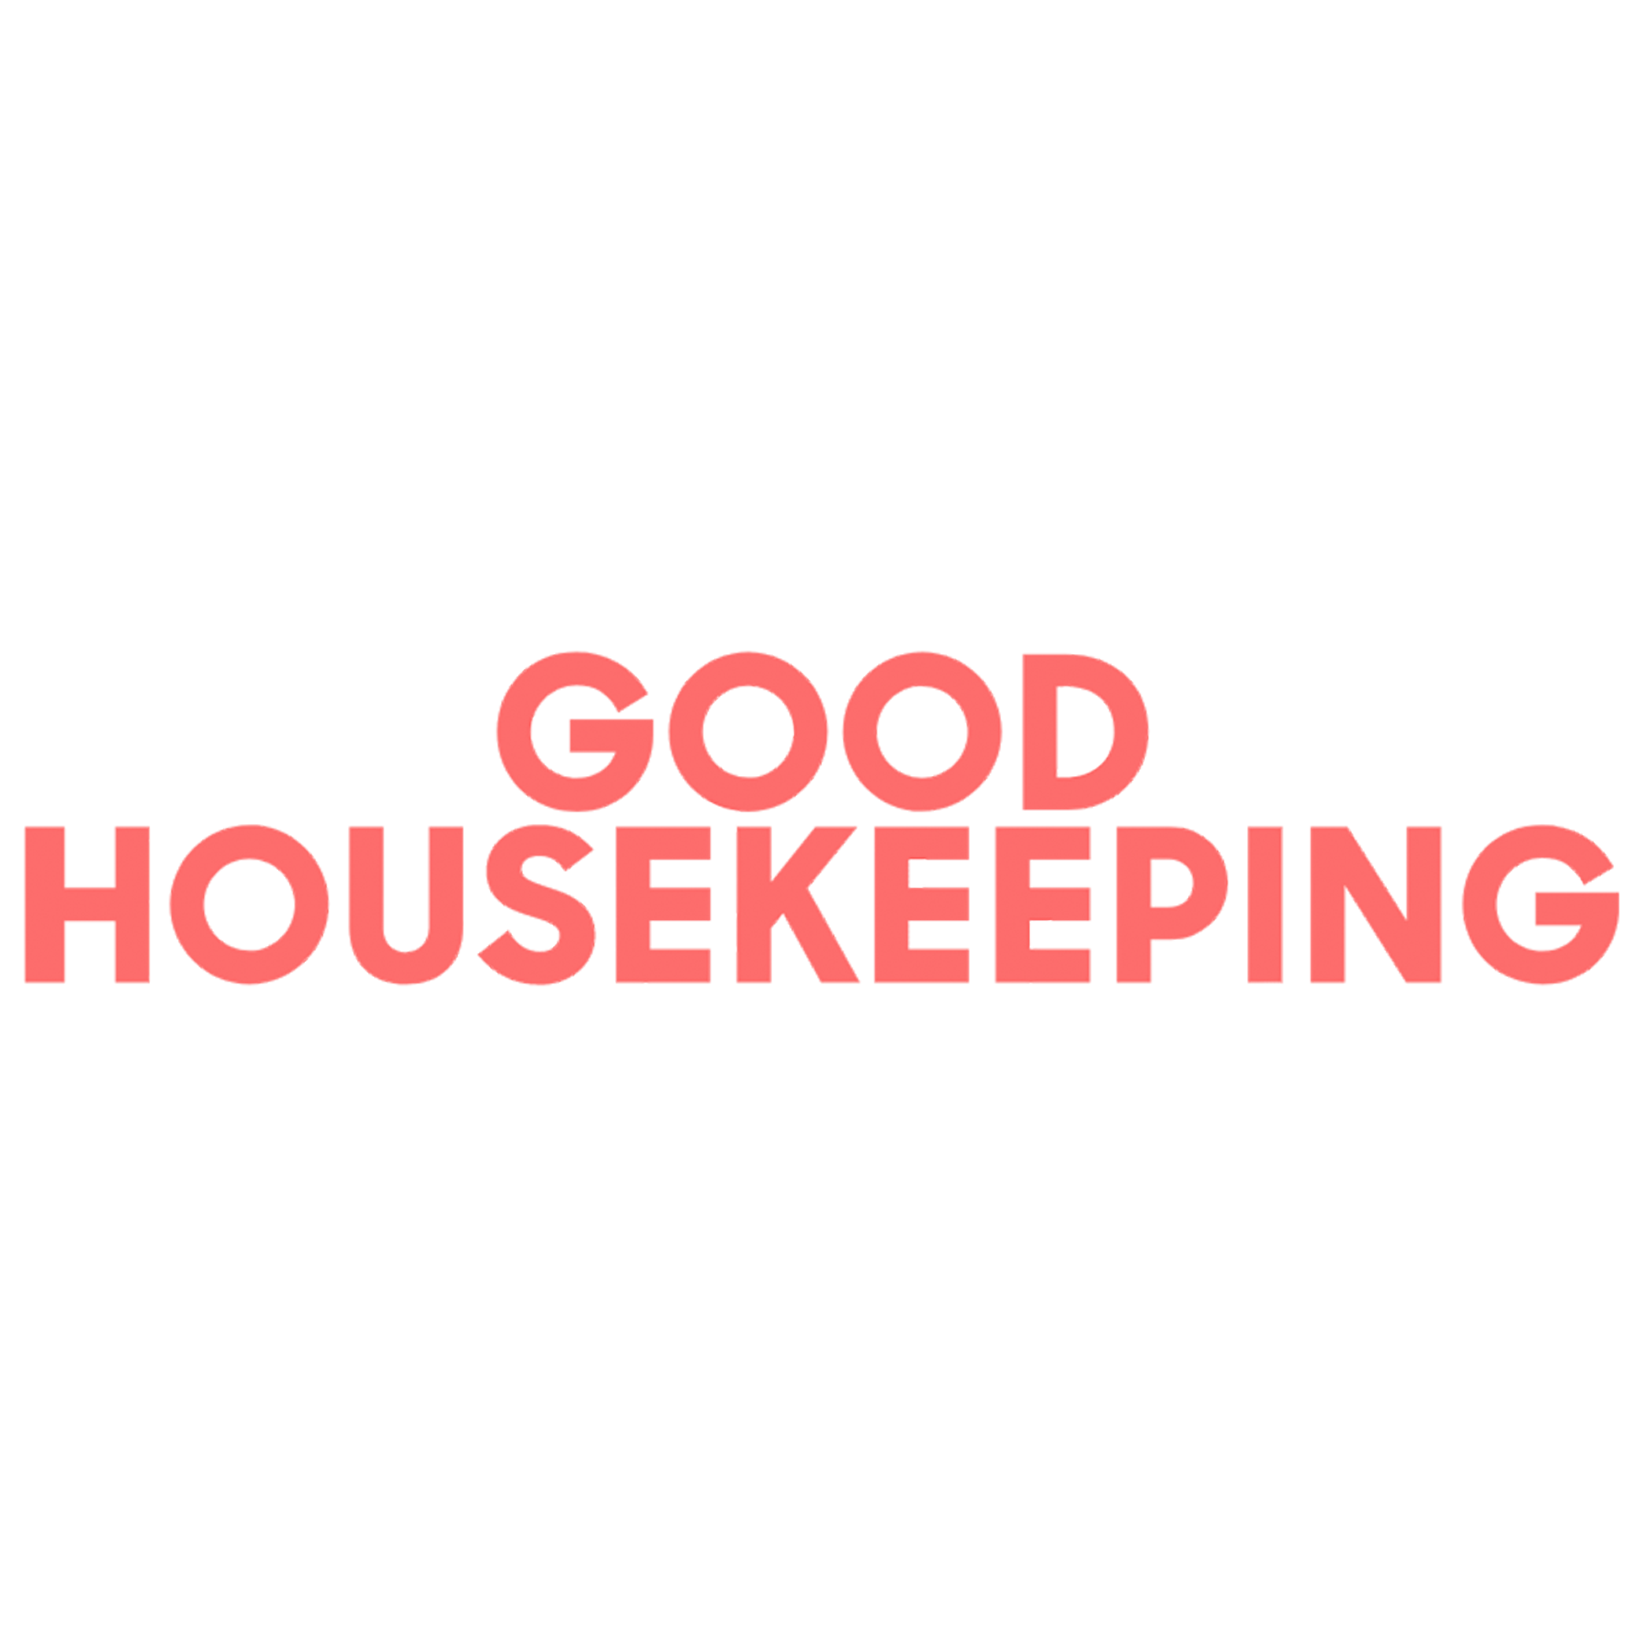 Good housekeeping logo